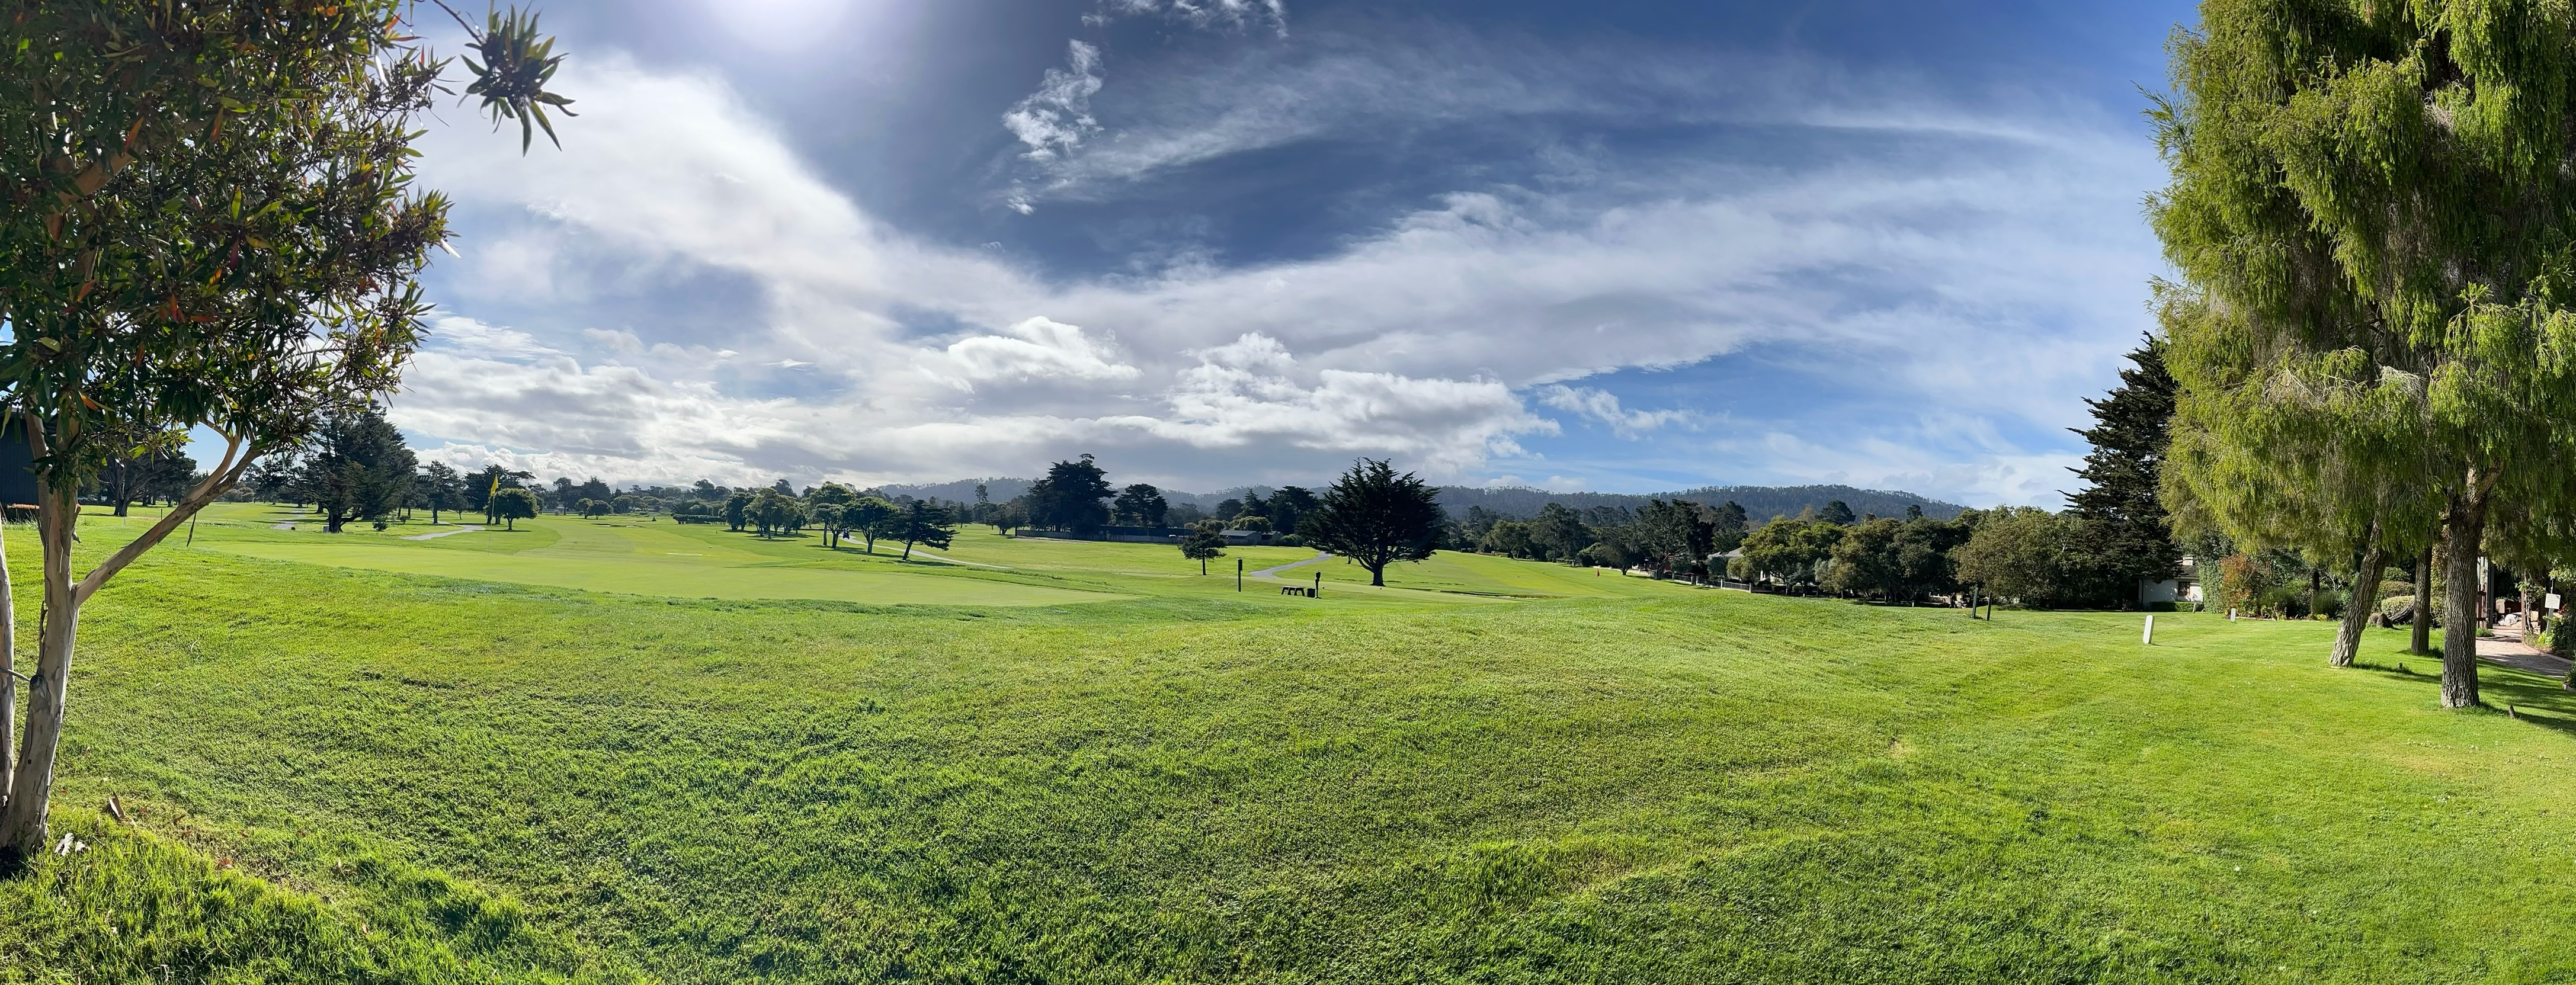 A few of the Hyatt Regency Monterey golf course